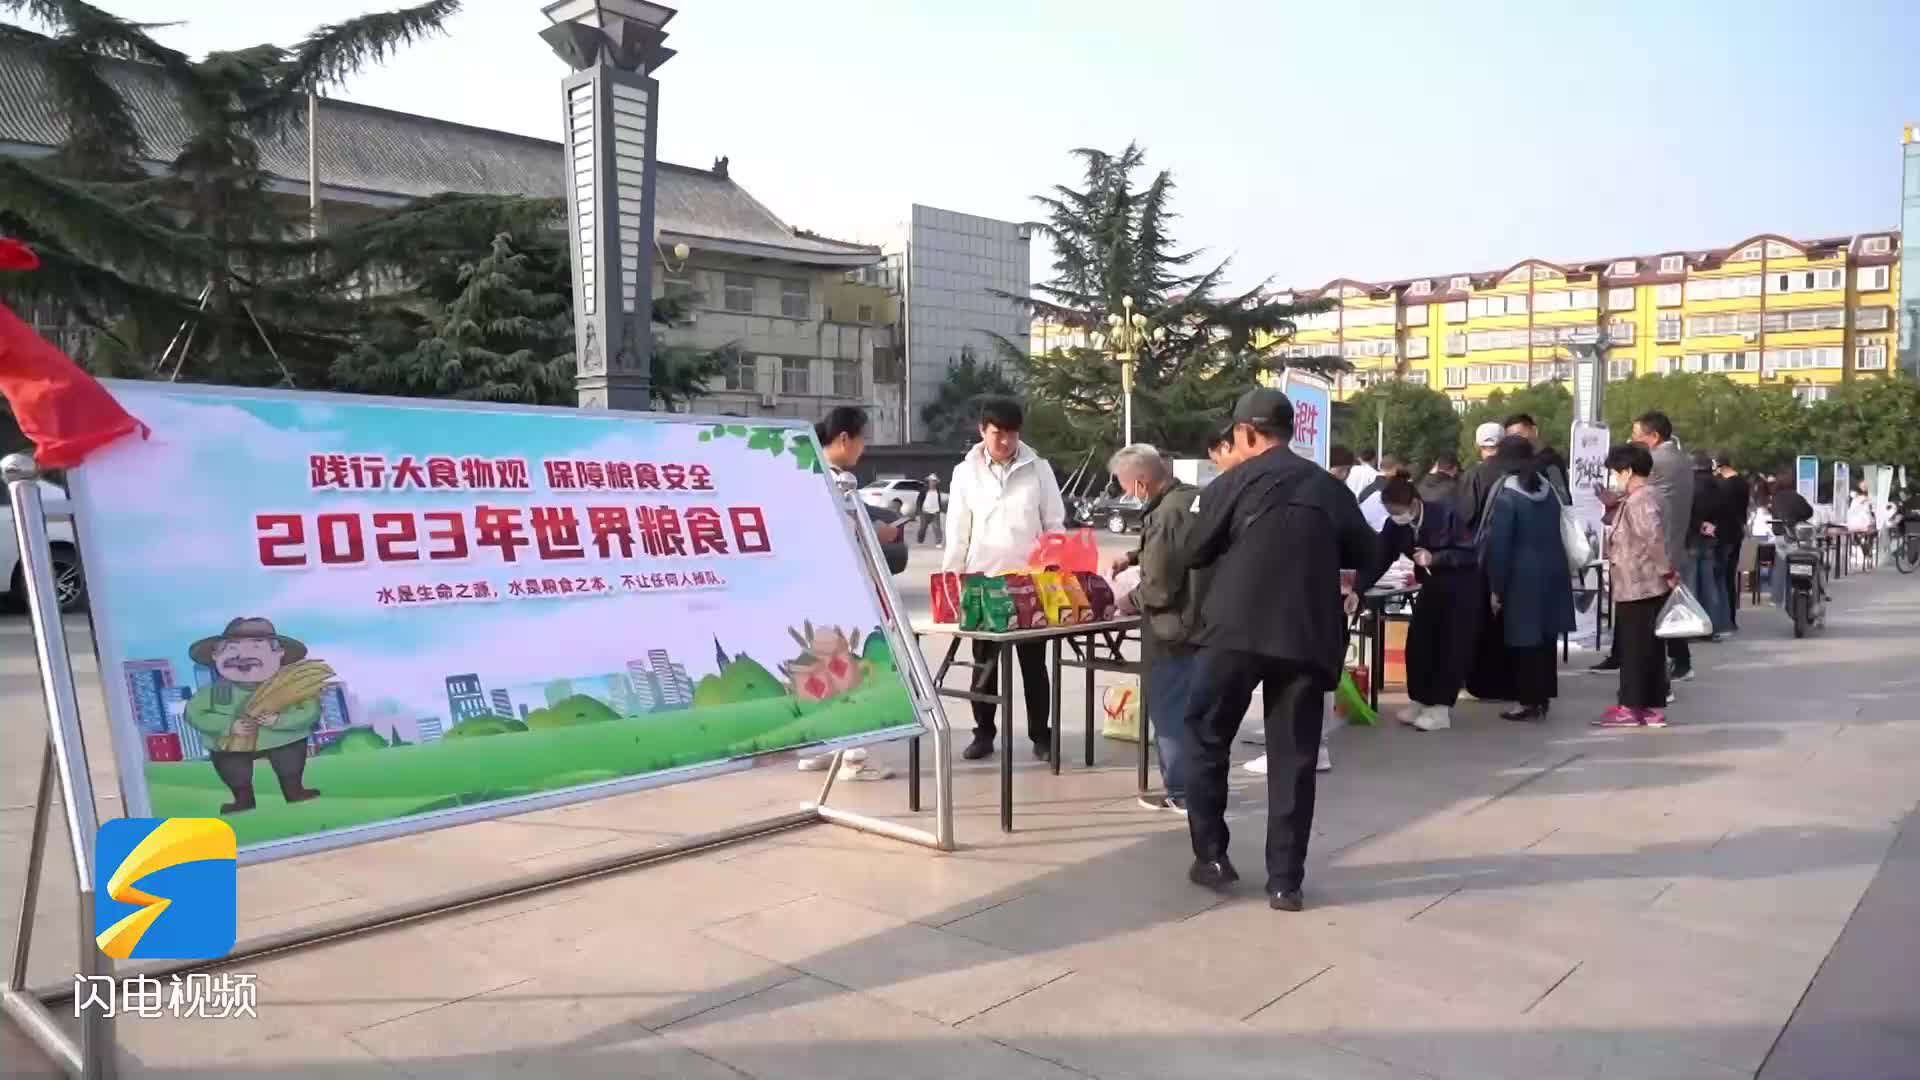 增强全民爱粮意识 枣庄薛城举办世界粮食日集中宣传活动